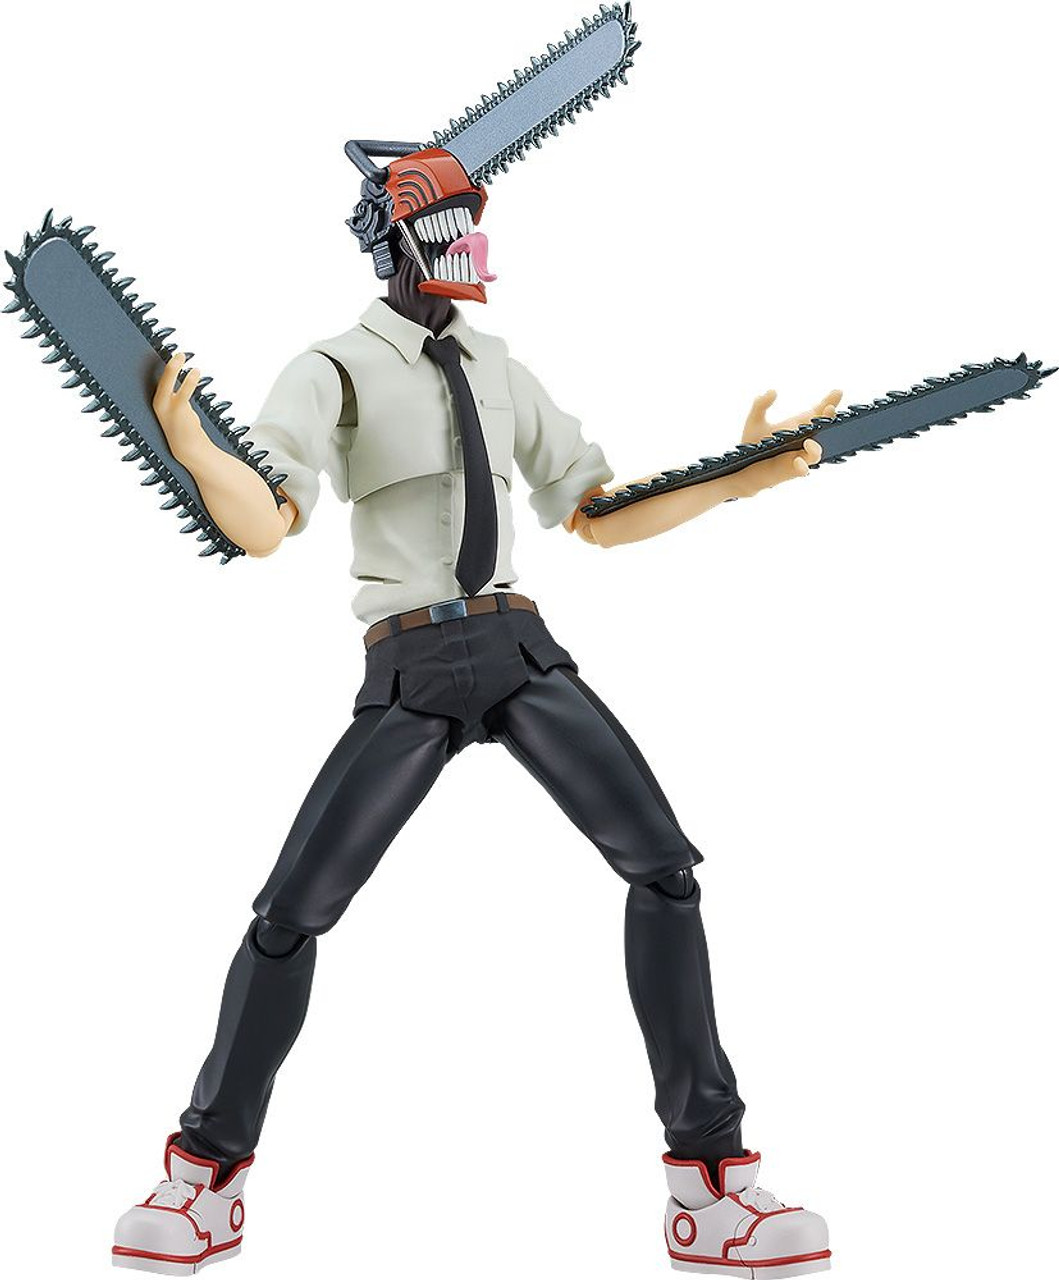 Denji, Chainsaw man